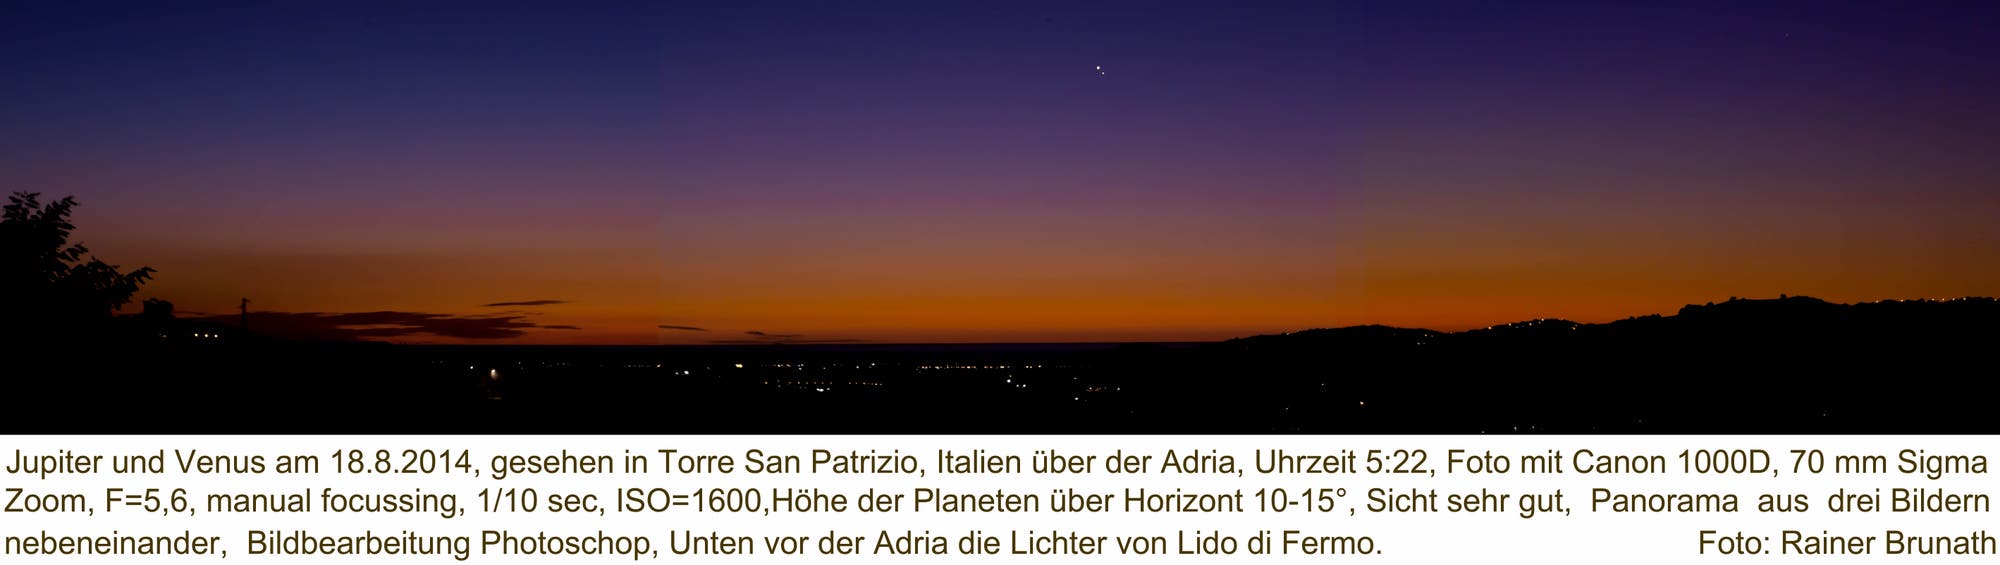 Jupiter-Venus Konstellation am 18. August 2014